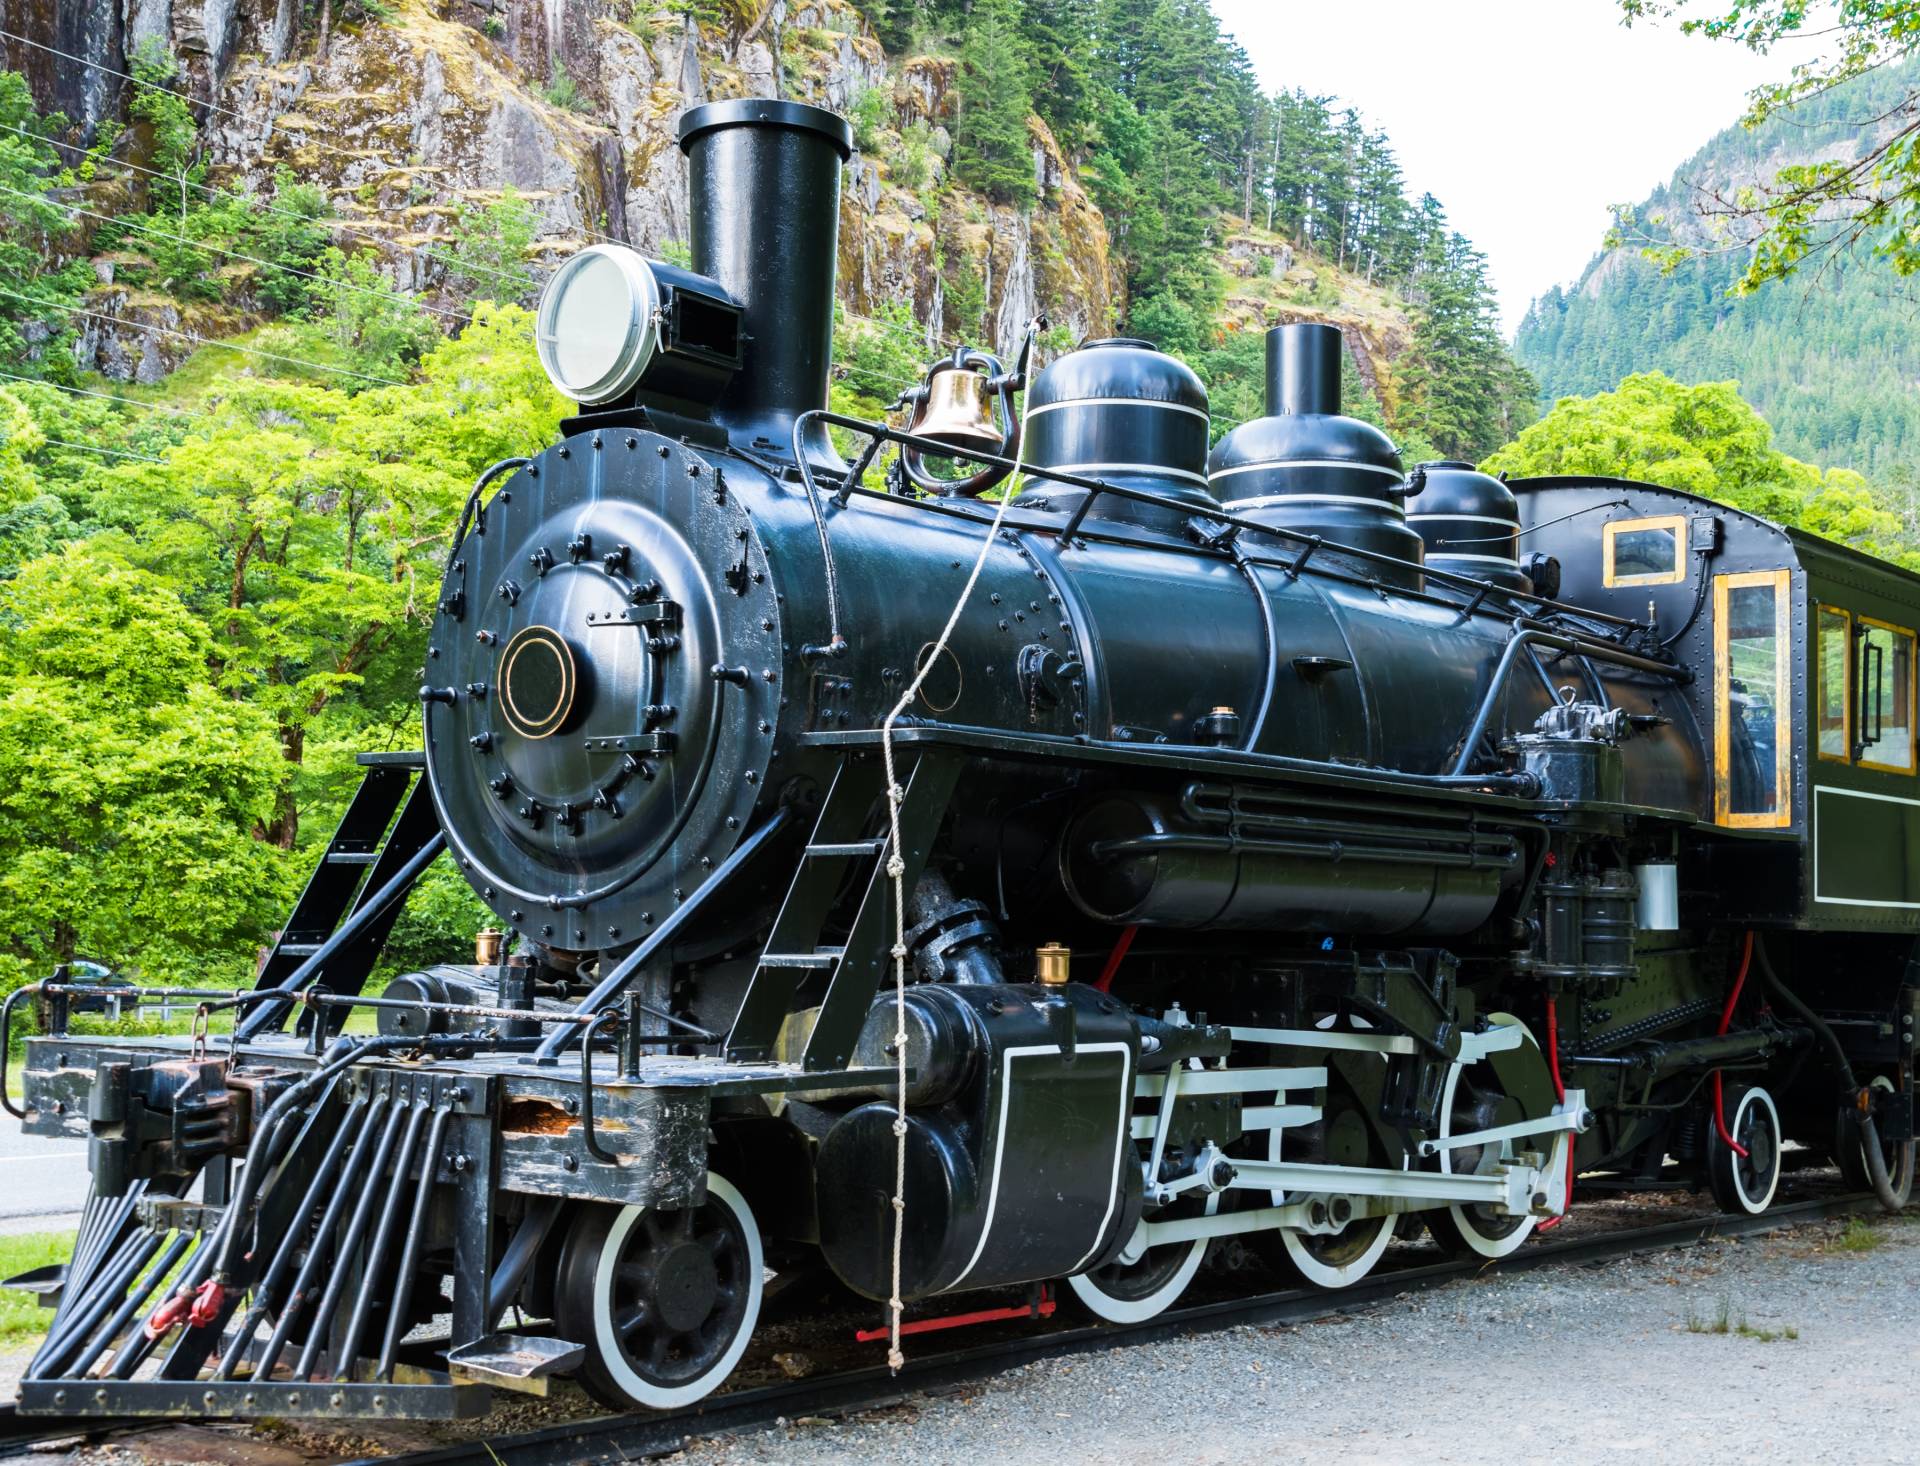 Papermoon Fototapete »Old Steam Locomotive« von Papermoon